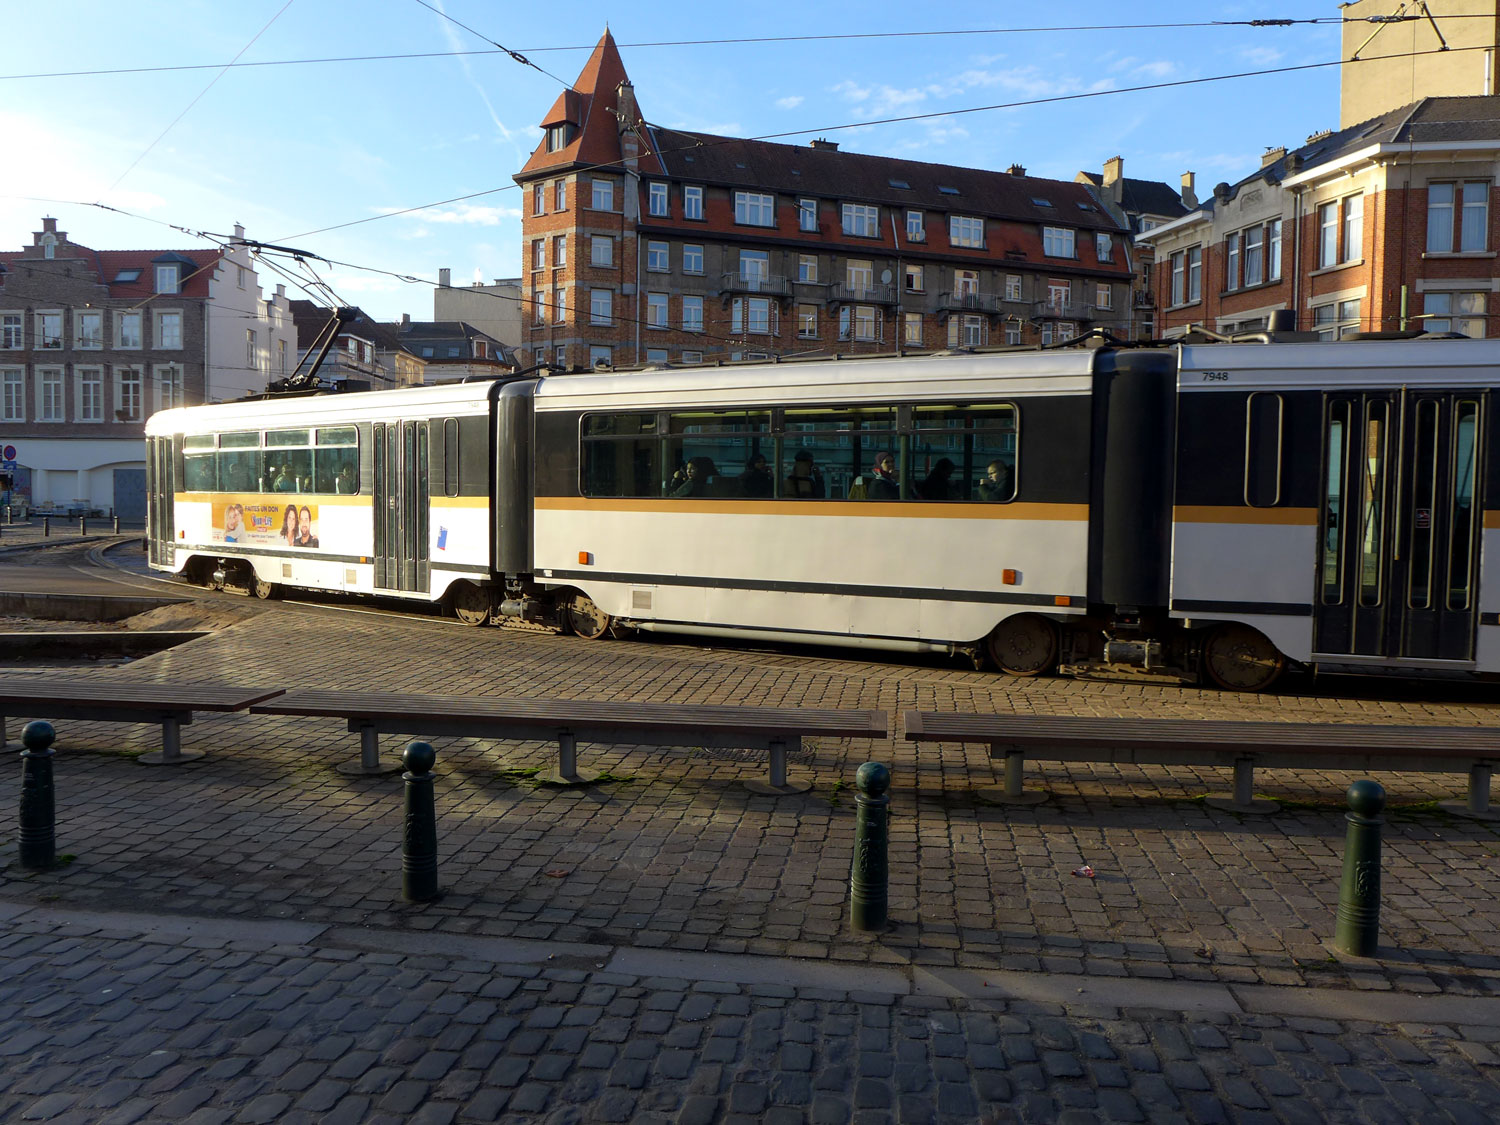 Malgré de nombreux transports en commun, la voiture est encore très présente à Bruxelles.